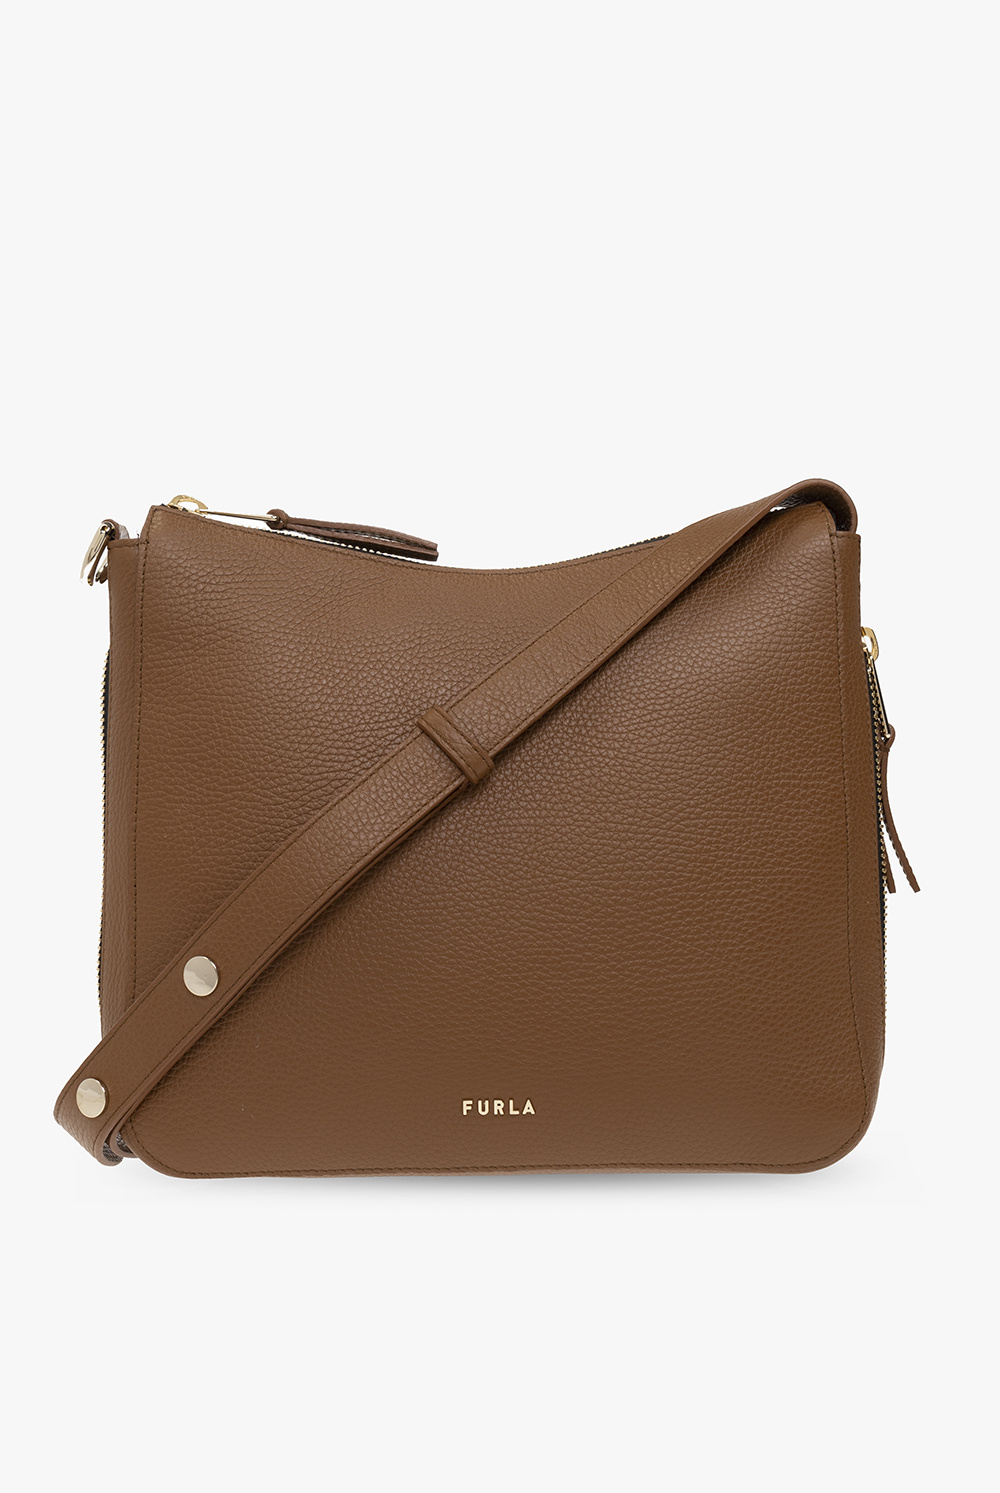 Furla ‘Sky Medium’ shoulder bag